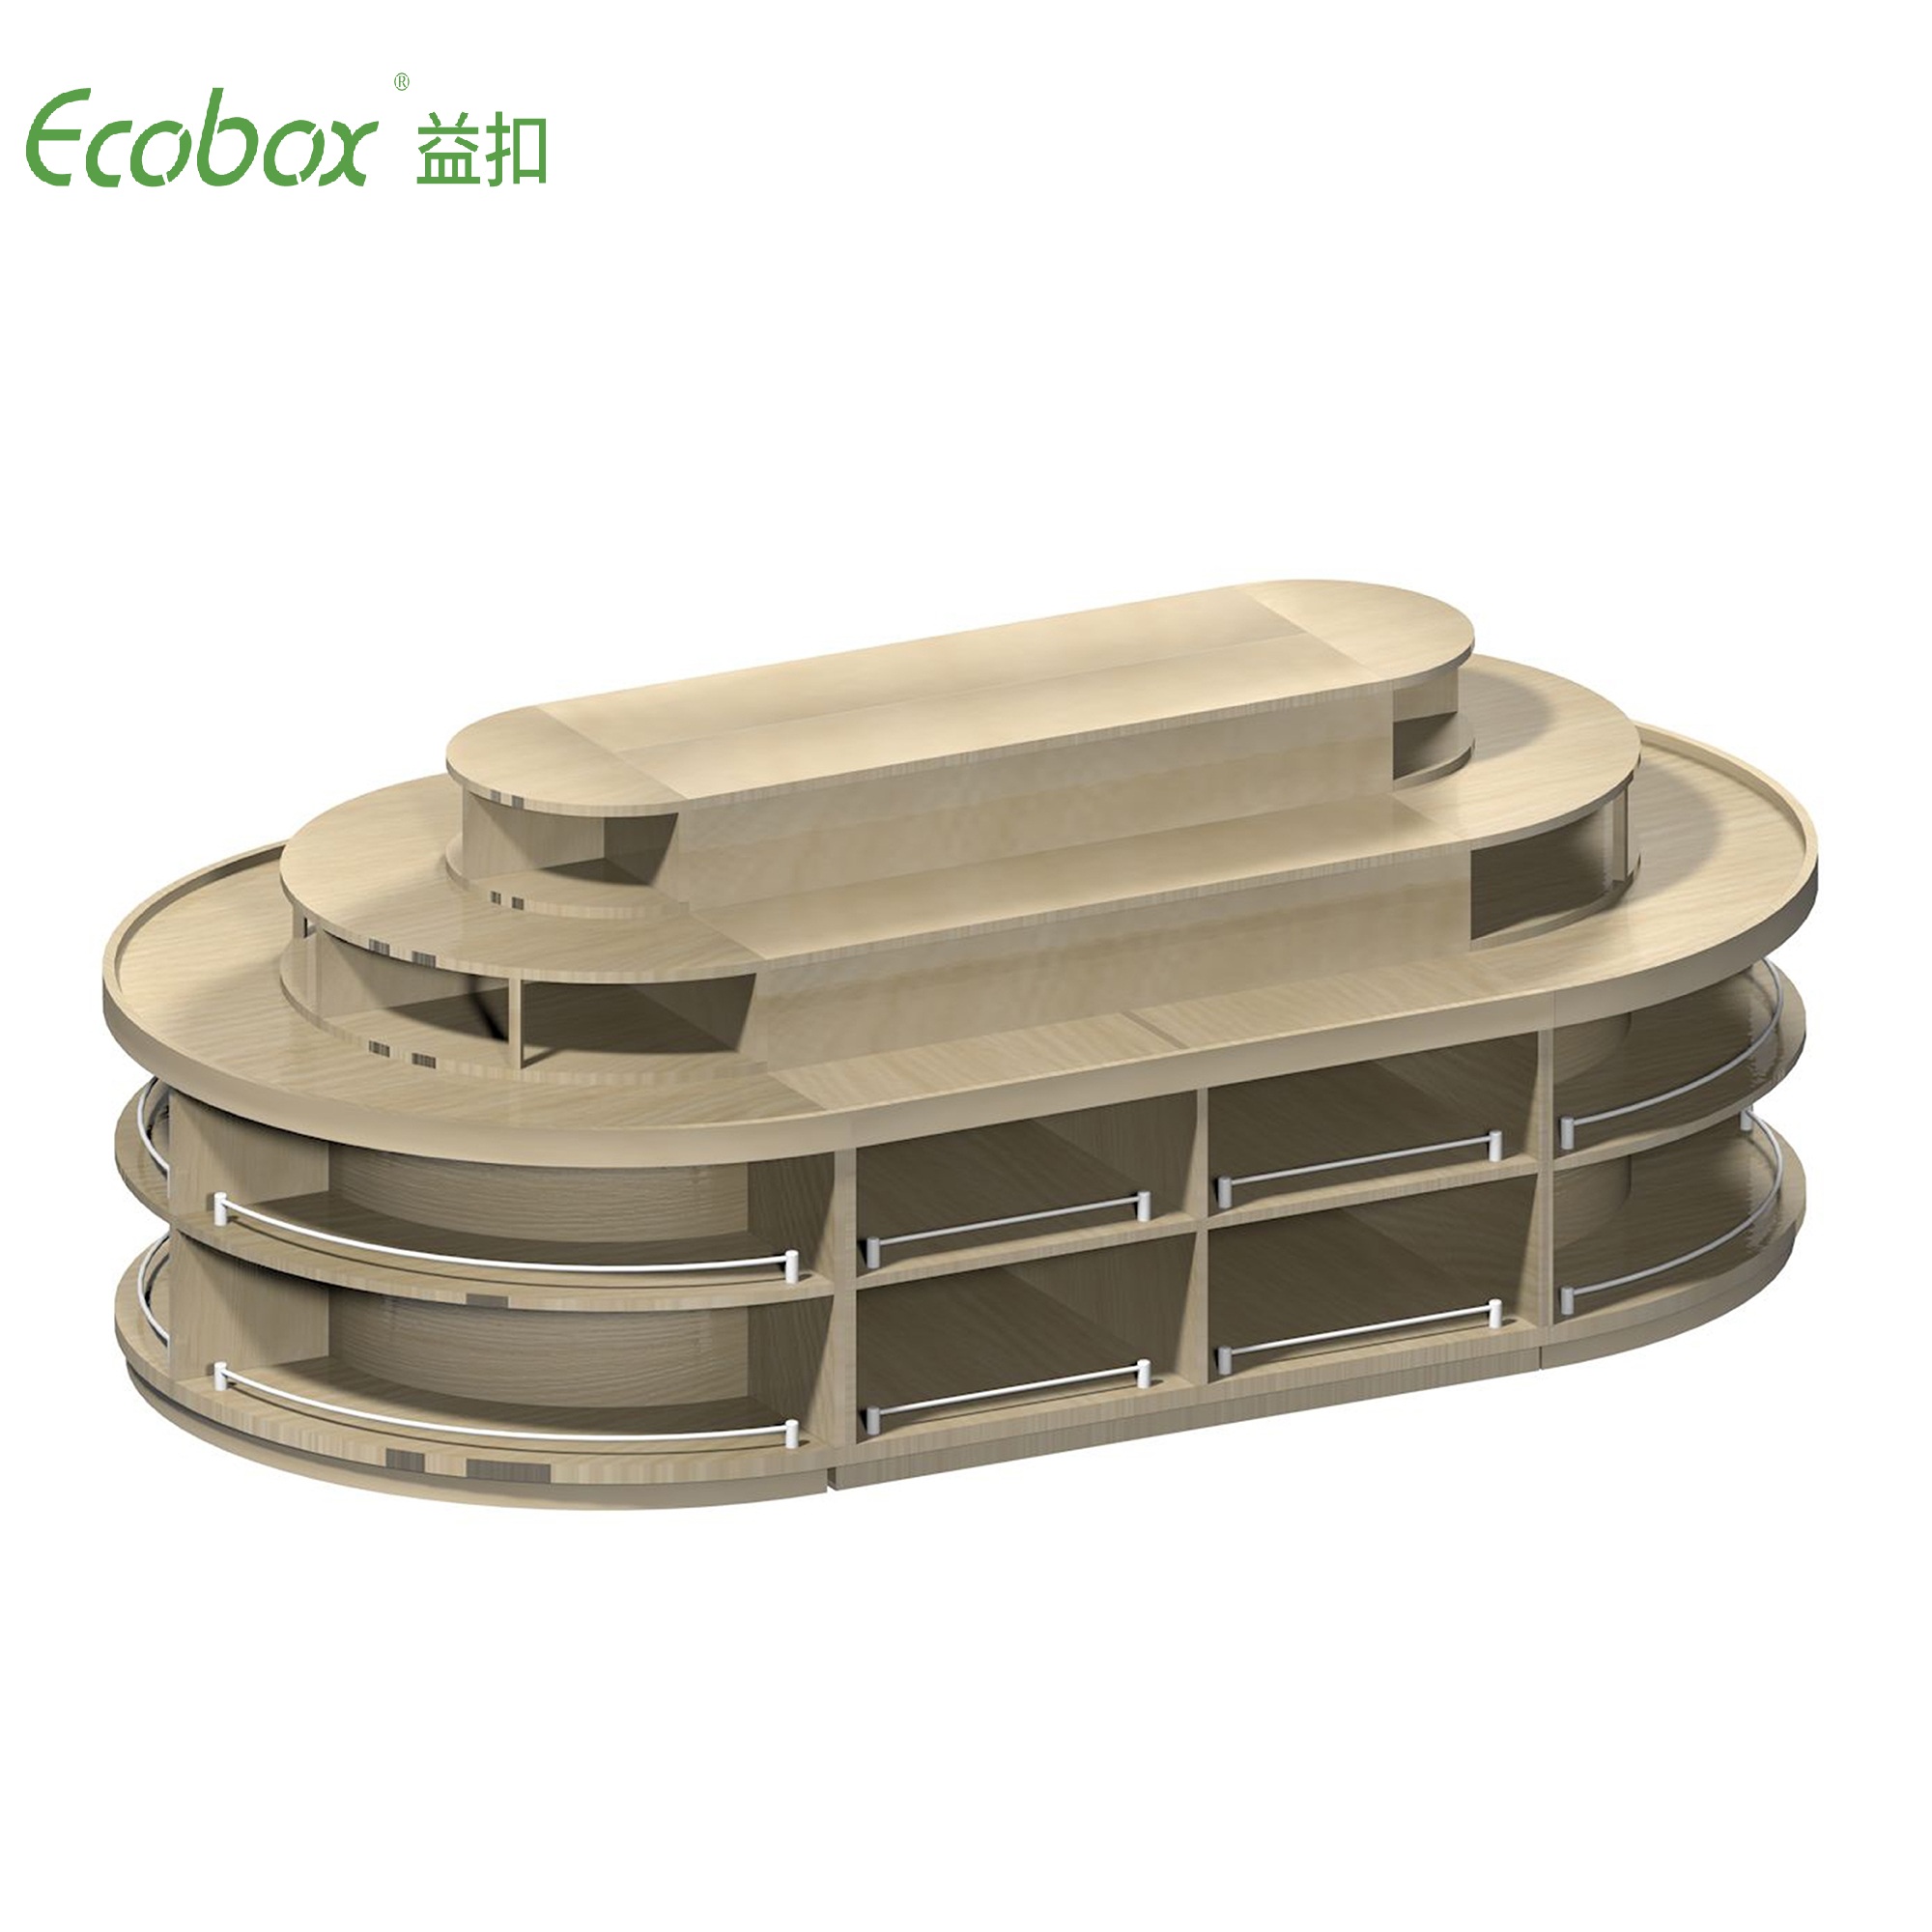 Rundes Regal der Ecobox G001-Serie mit Ecobox-Großbehältern für Supermarkt-Großlebensmitteldisplays